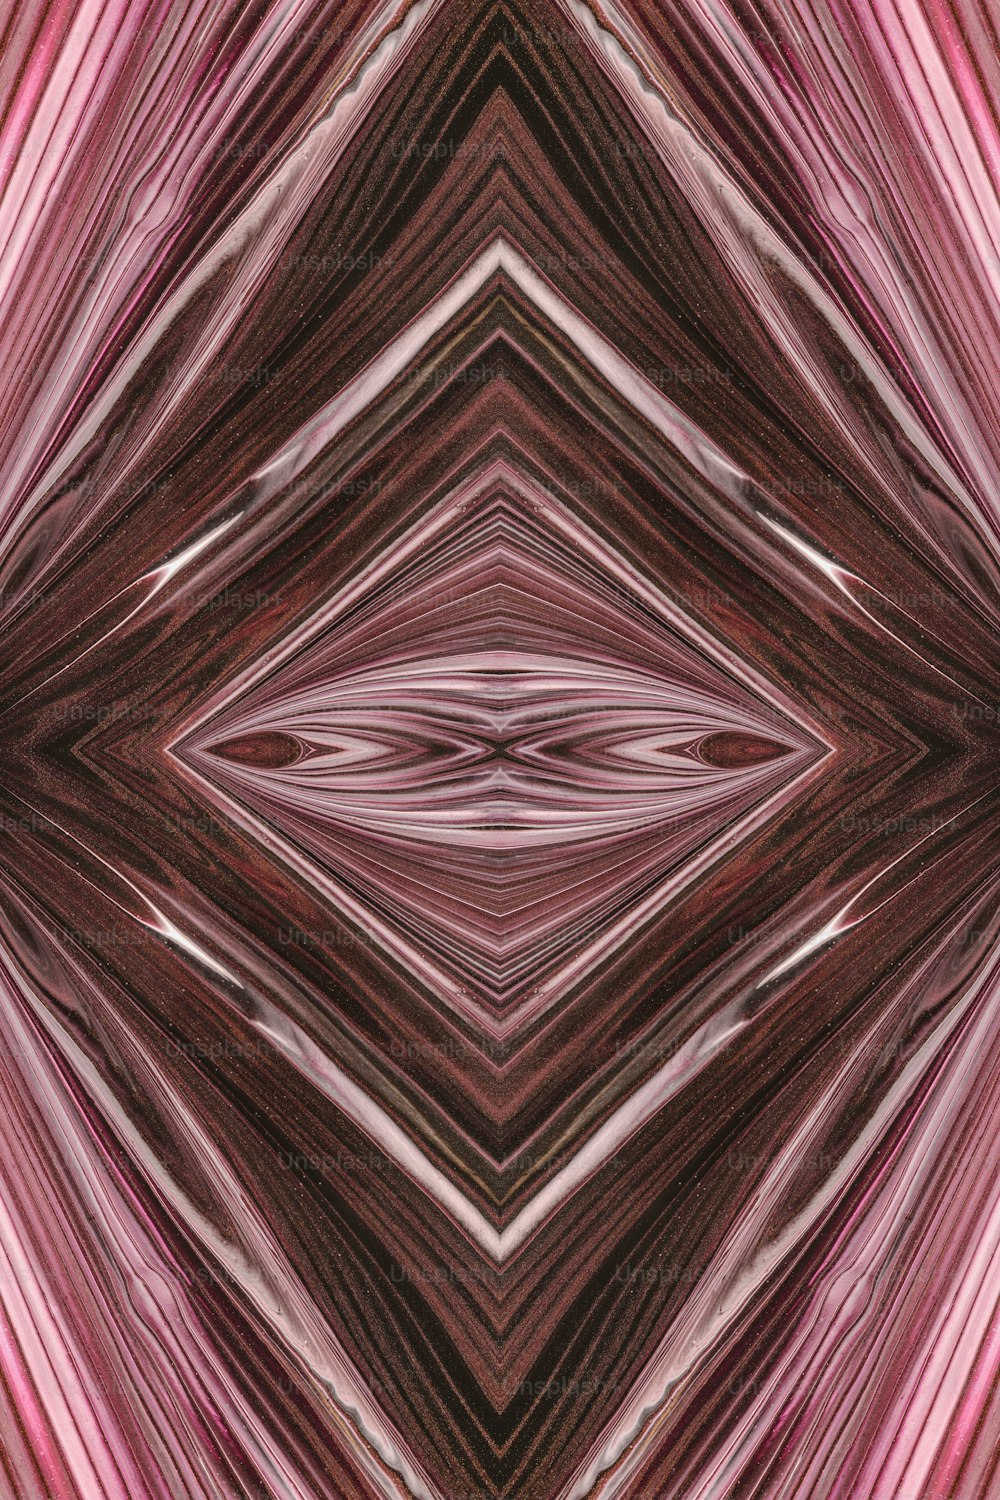 Una imagen de un patrón rosa y marrón